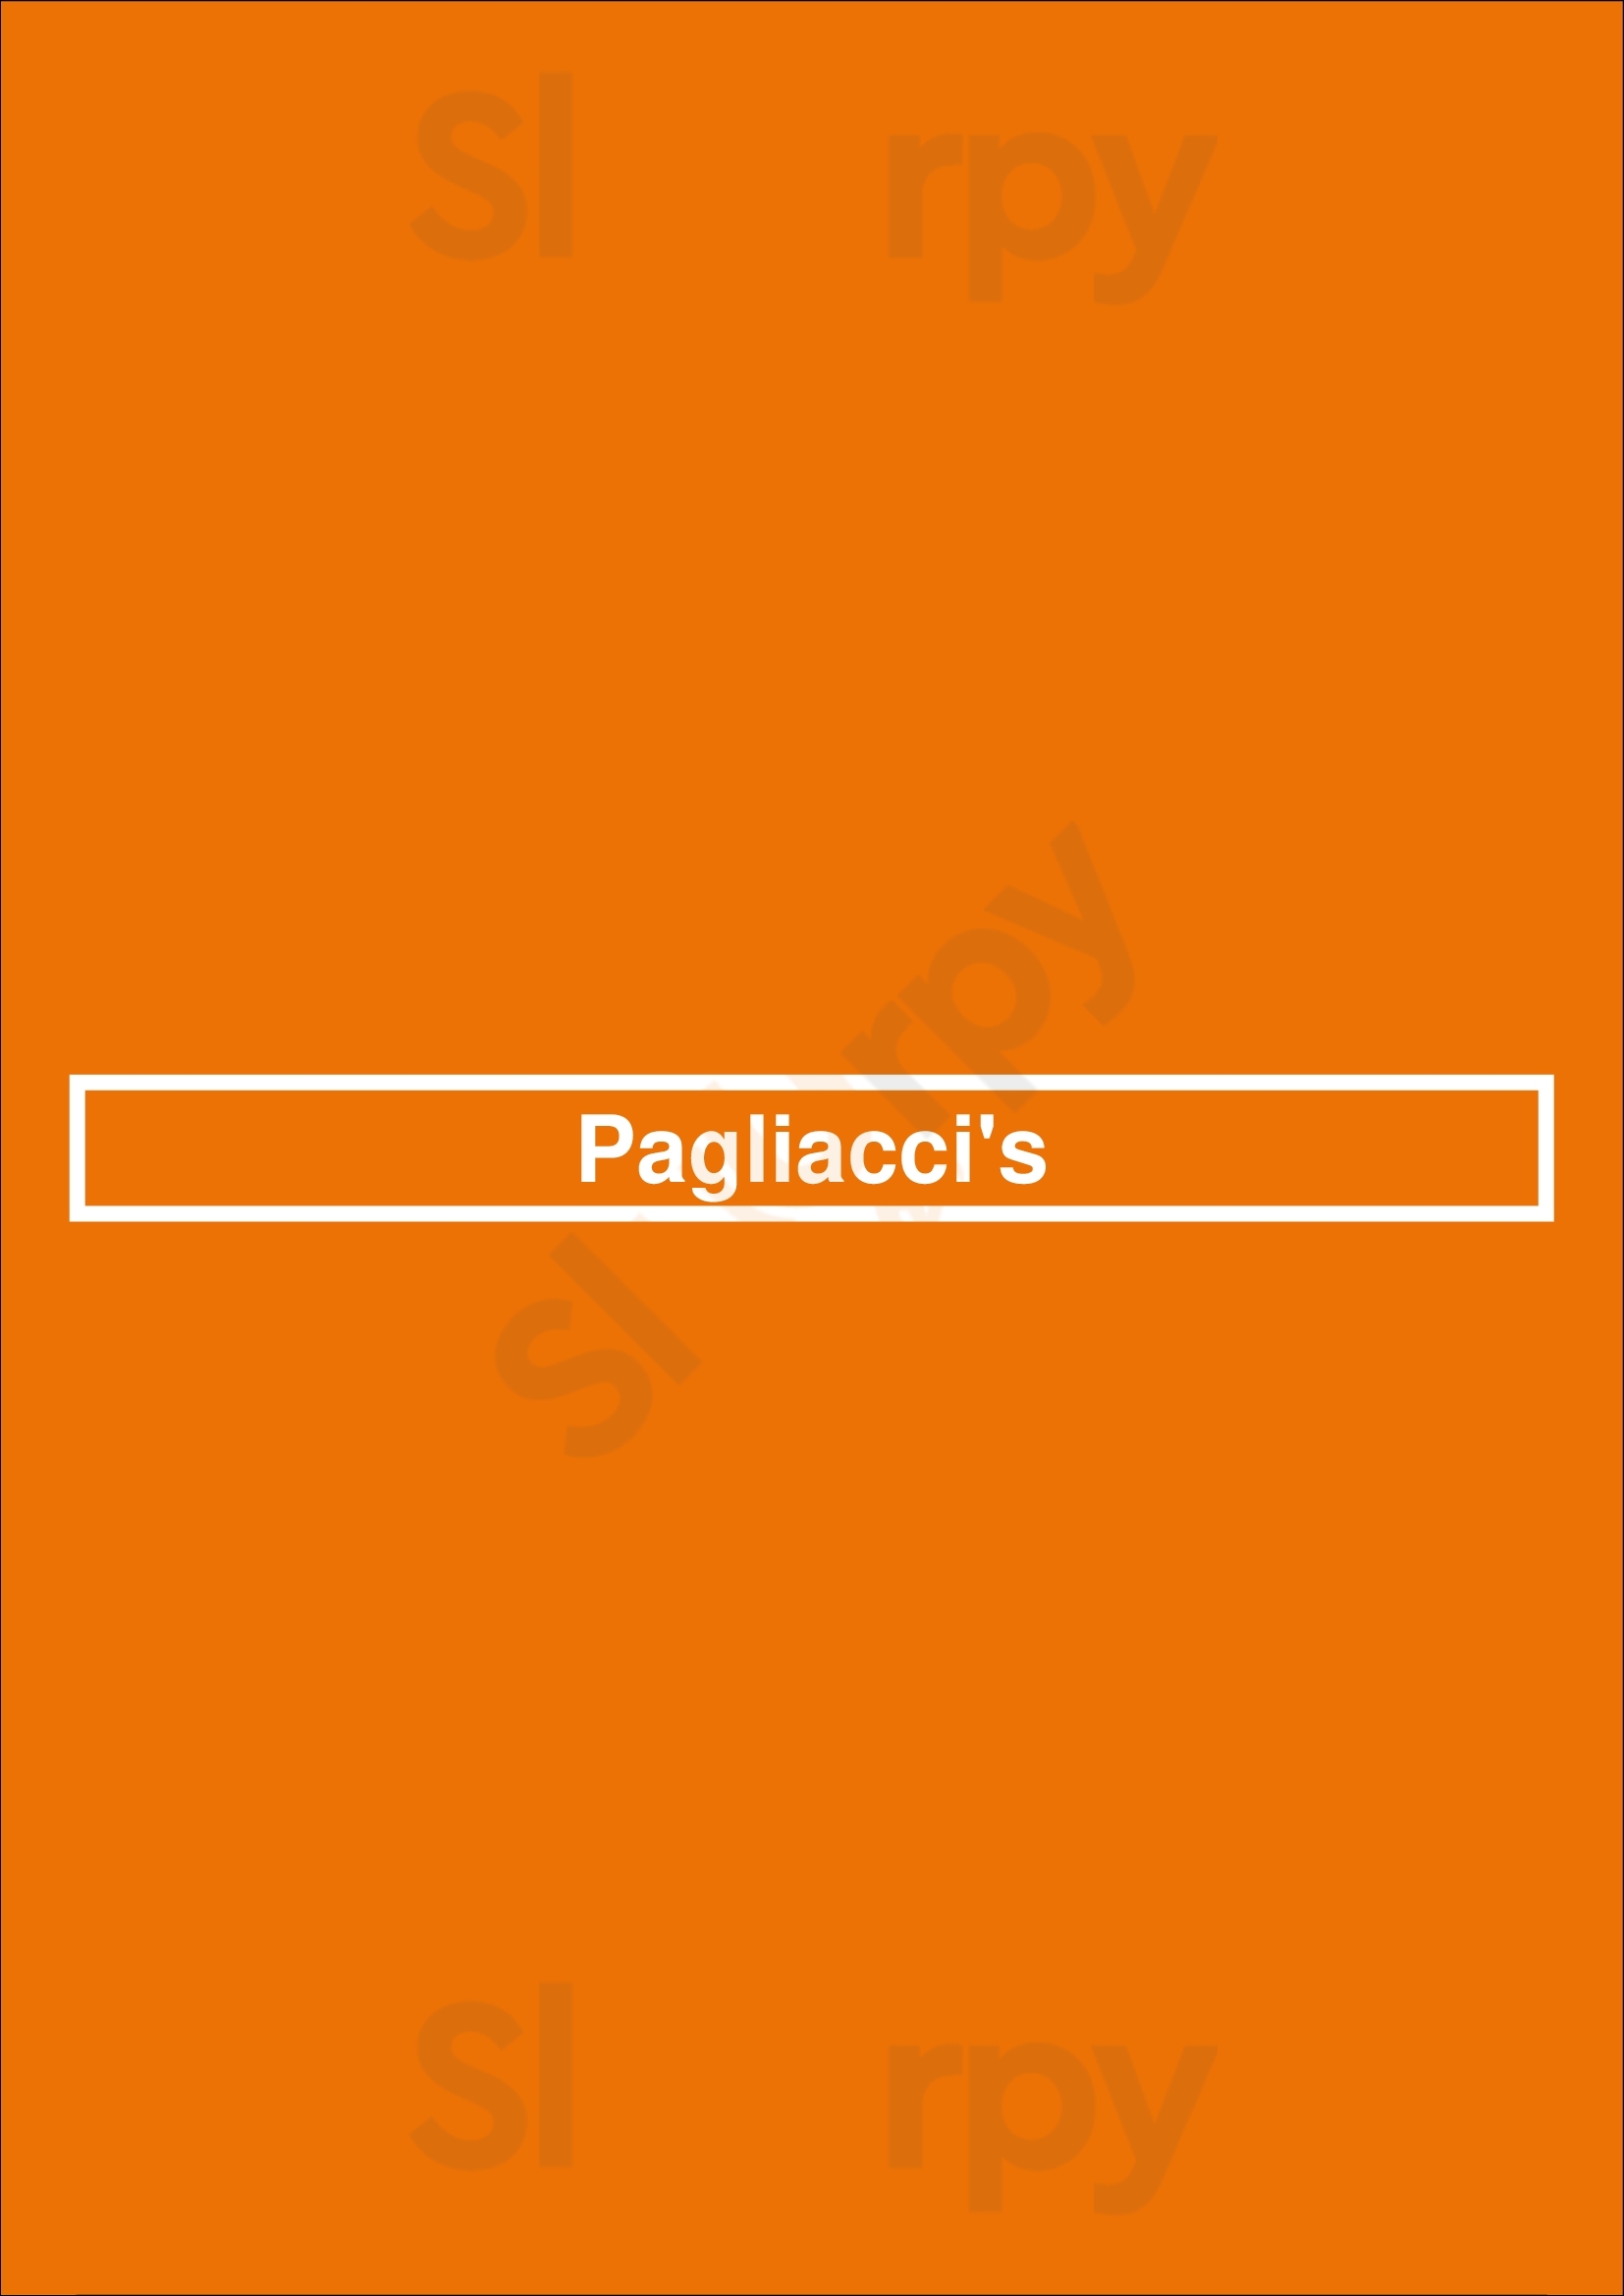 Pagliacci's Victoria Menu - 1